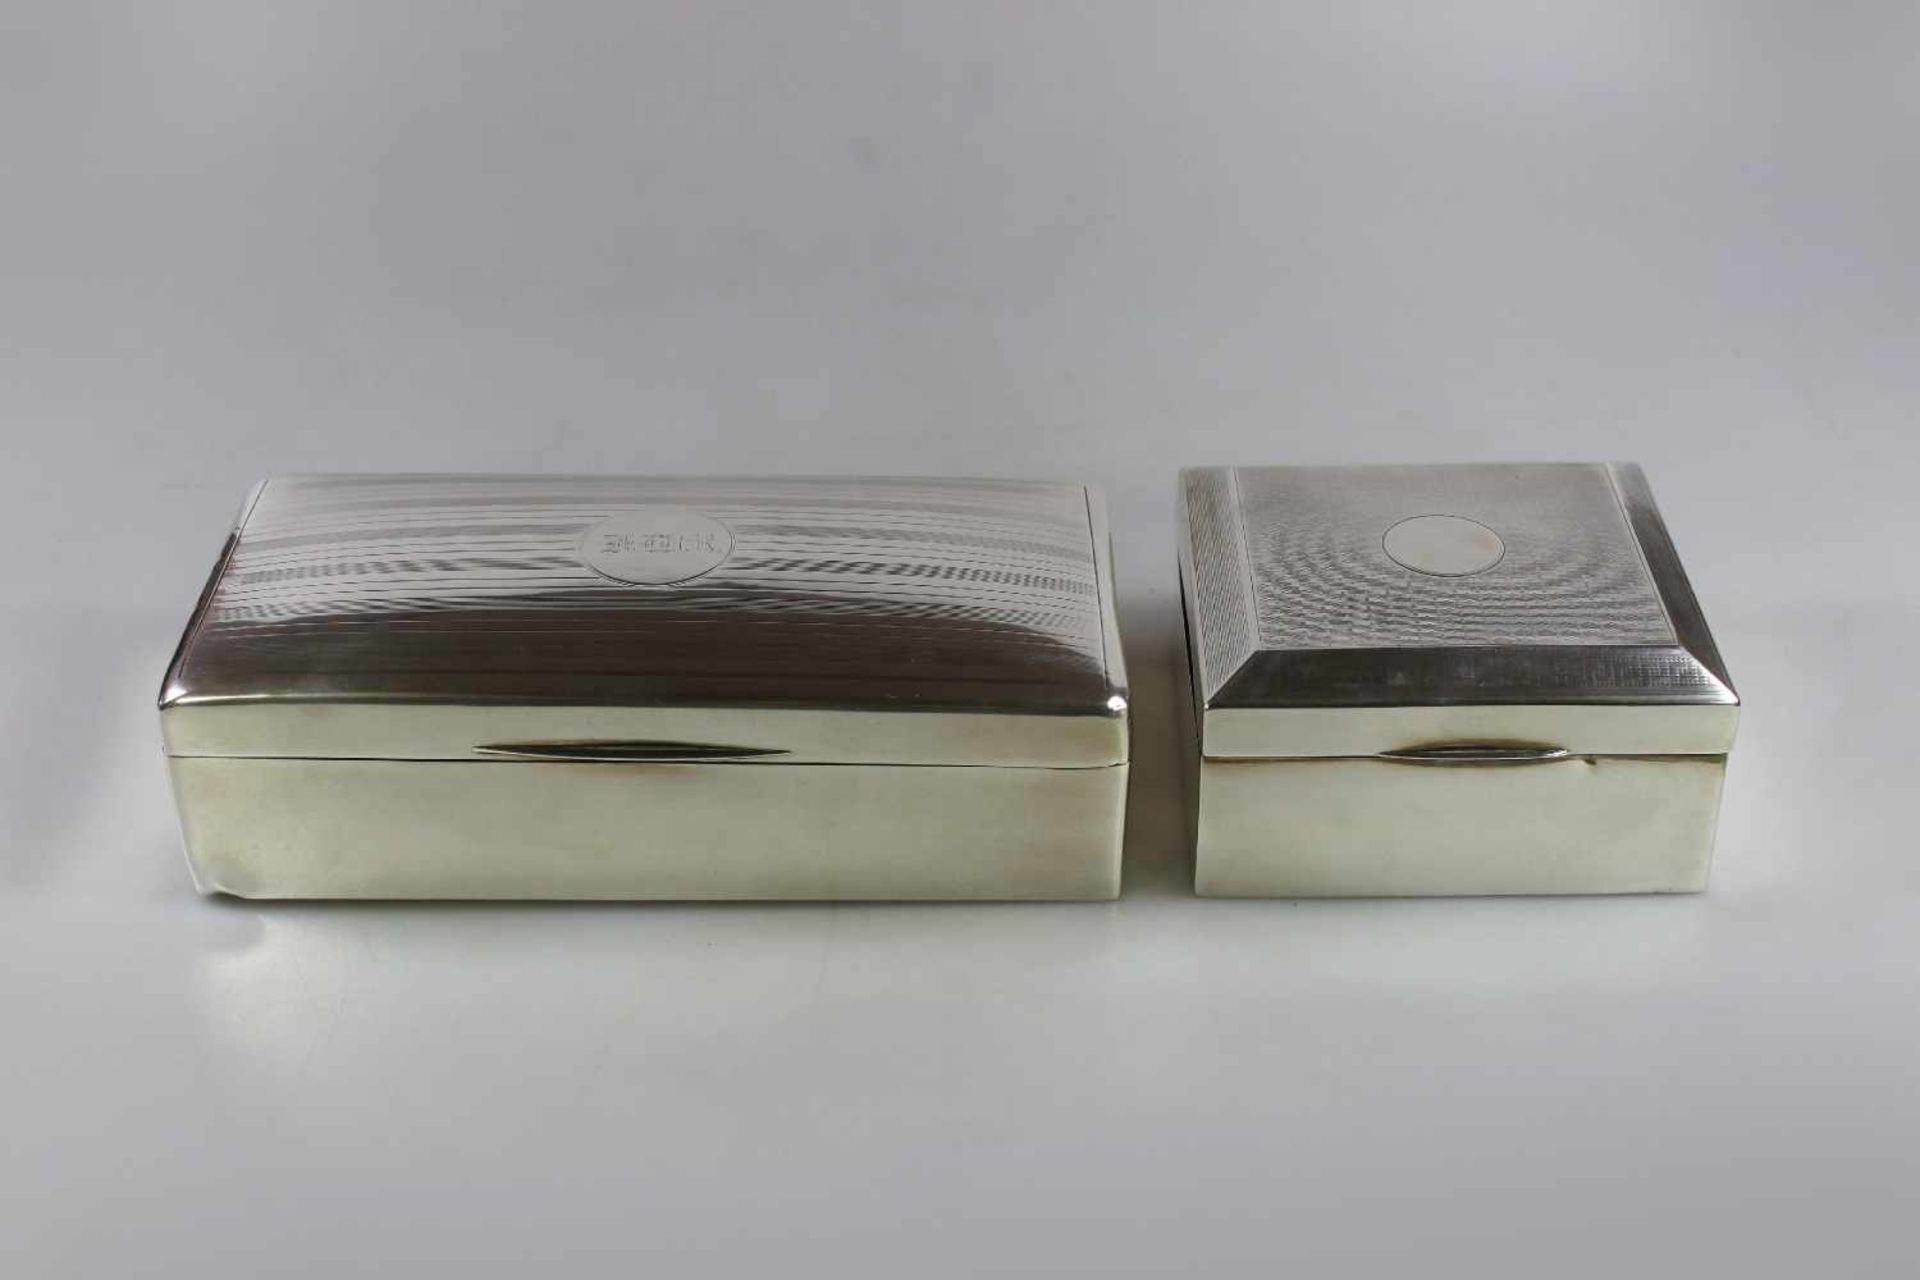 Paar Zigarettendosen, Silber punziert mit Holzkern, Boden beschwert, England Mitte 20. Jh., Maße: 18